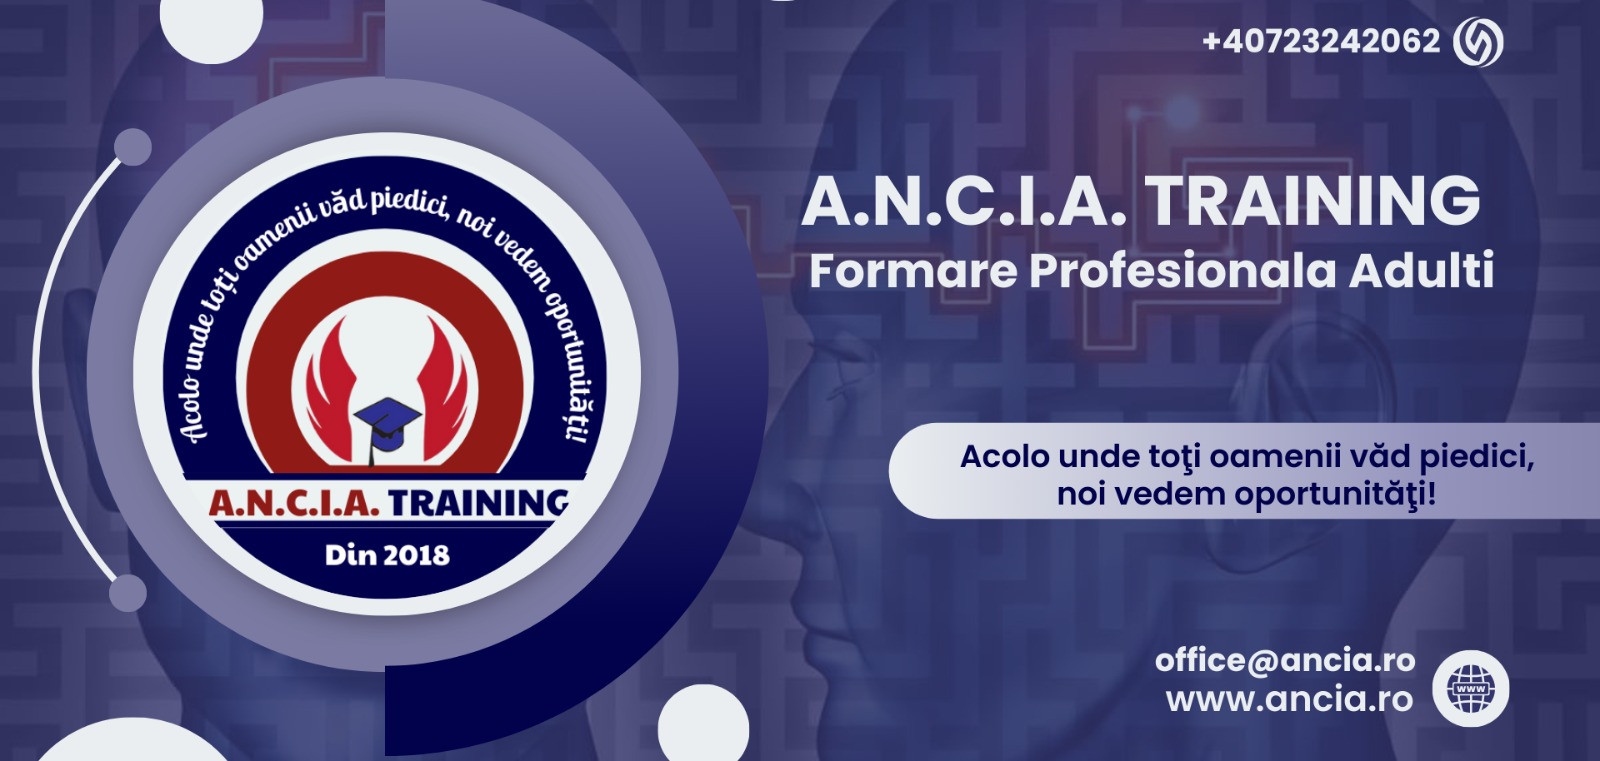 A.N.C.I.A. training